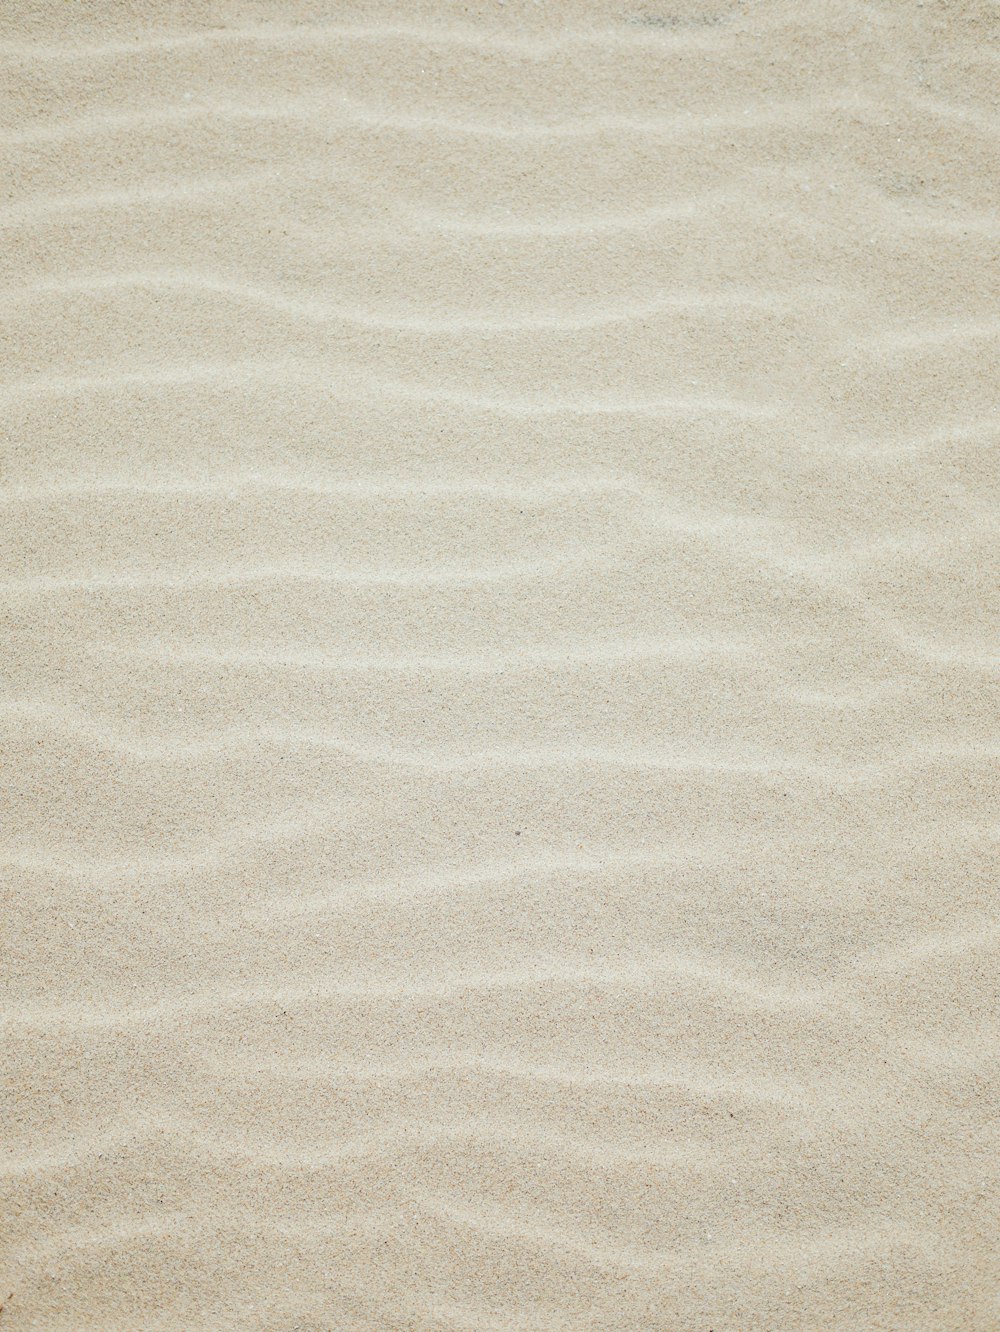 sabbia marrone con ombra di persona